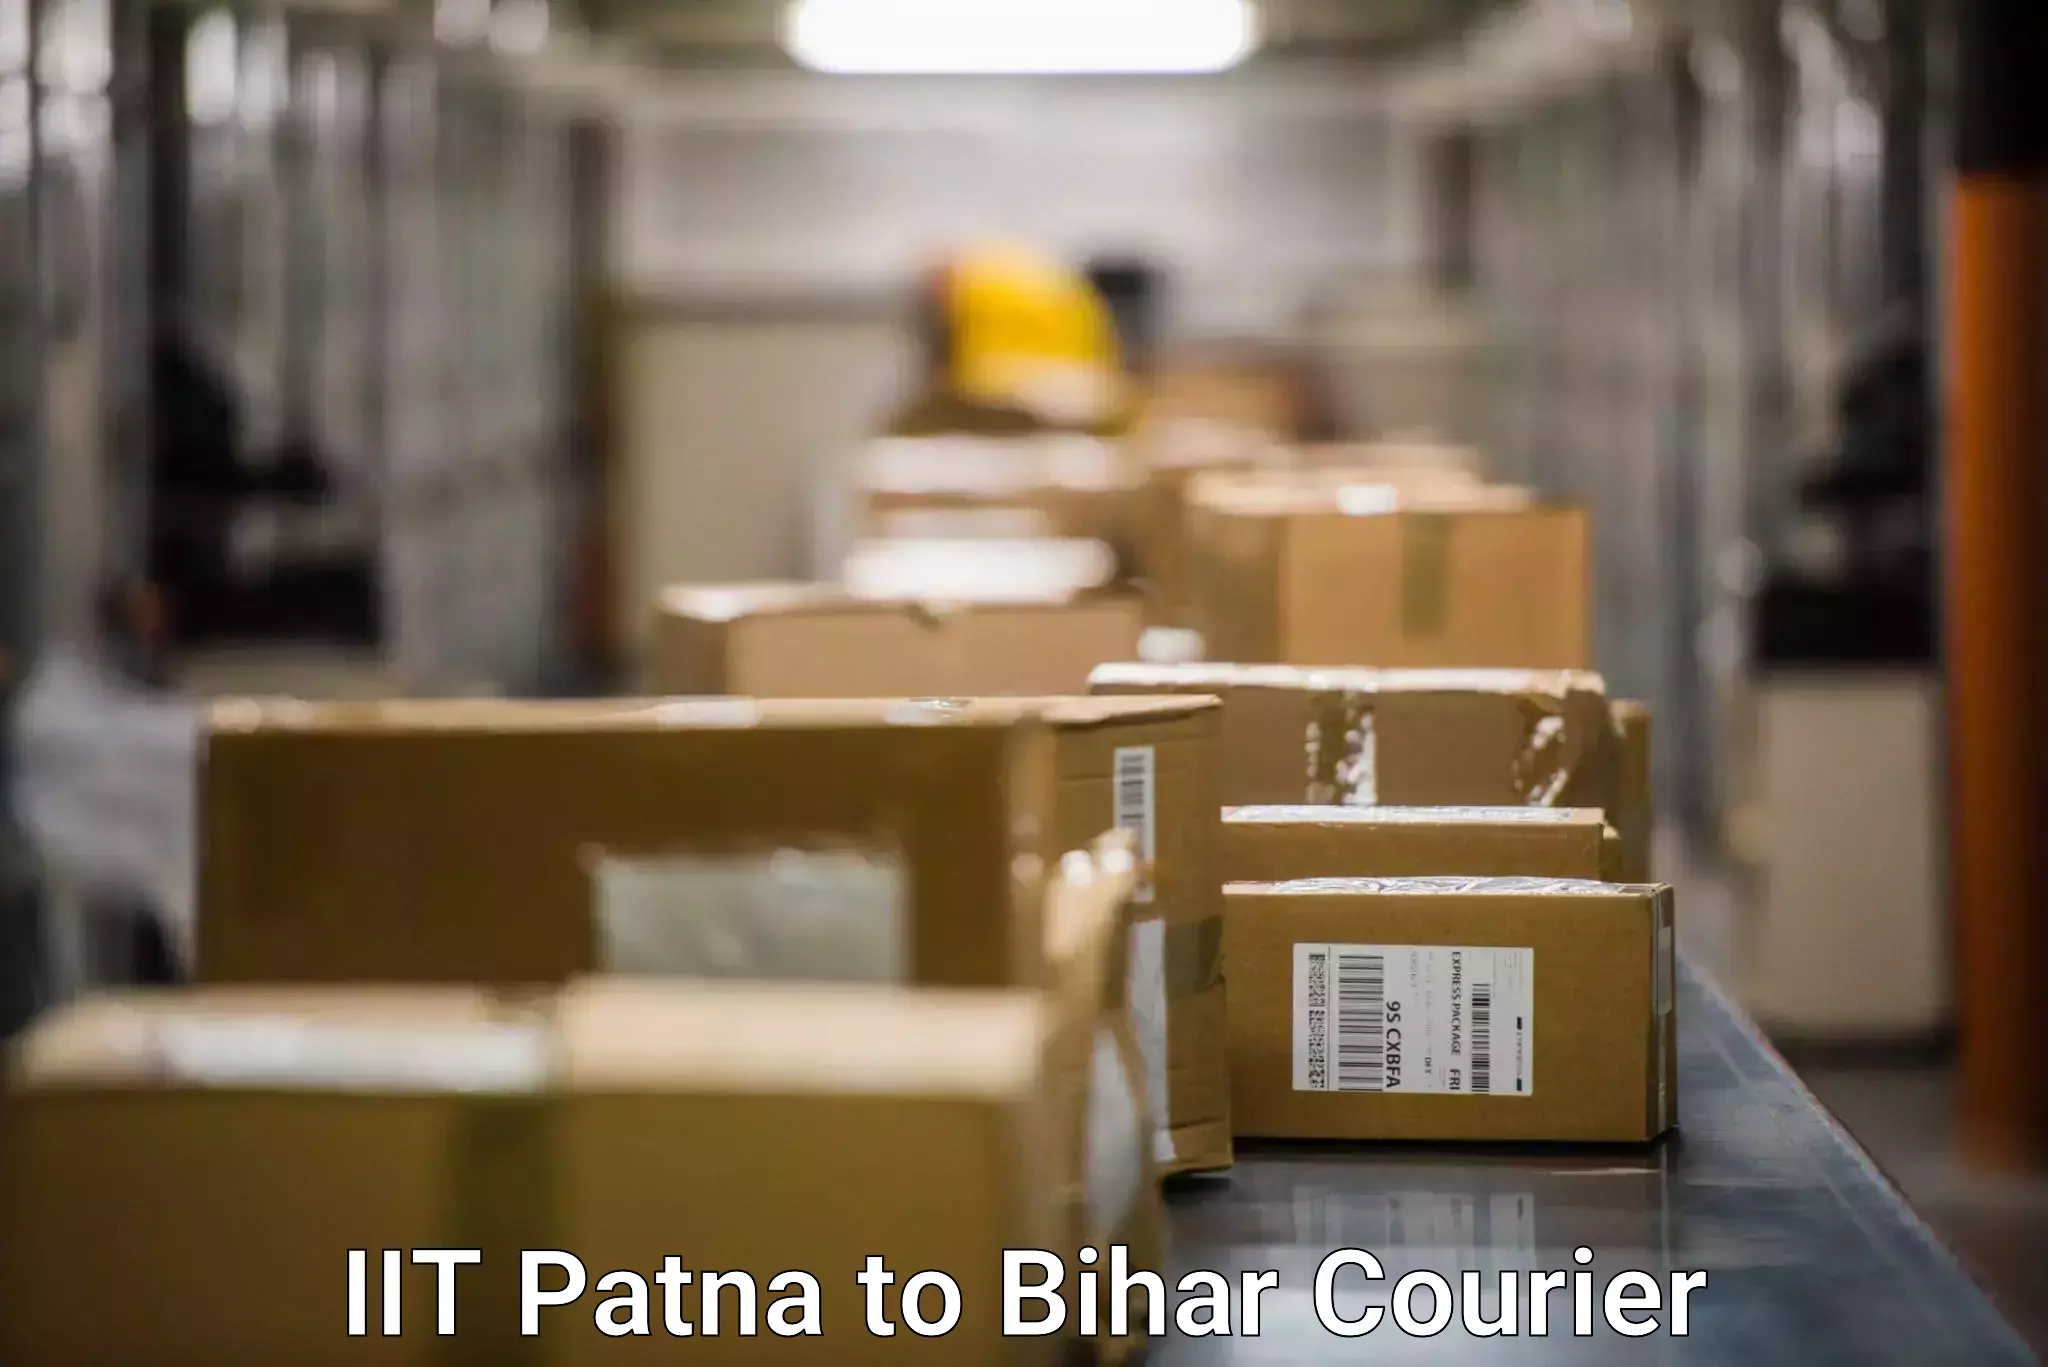 Global logistics network IIT Patna to Daudnagar